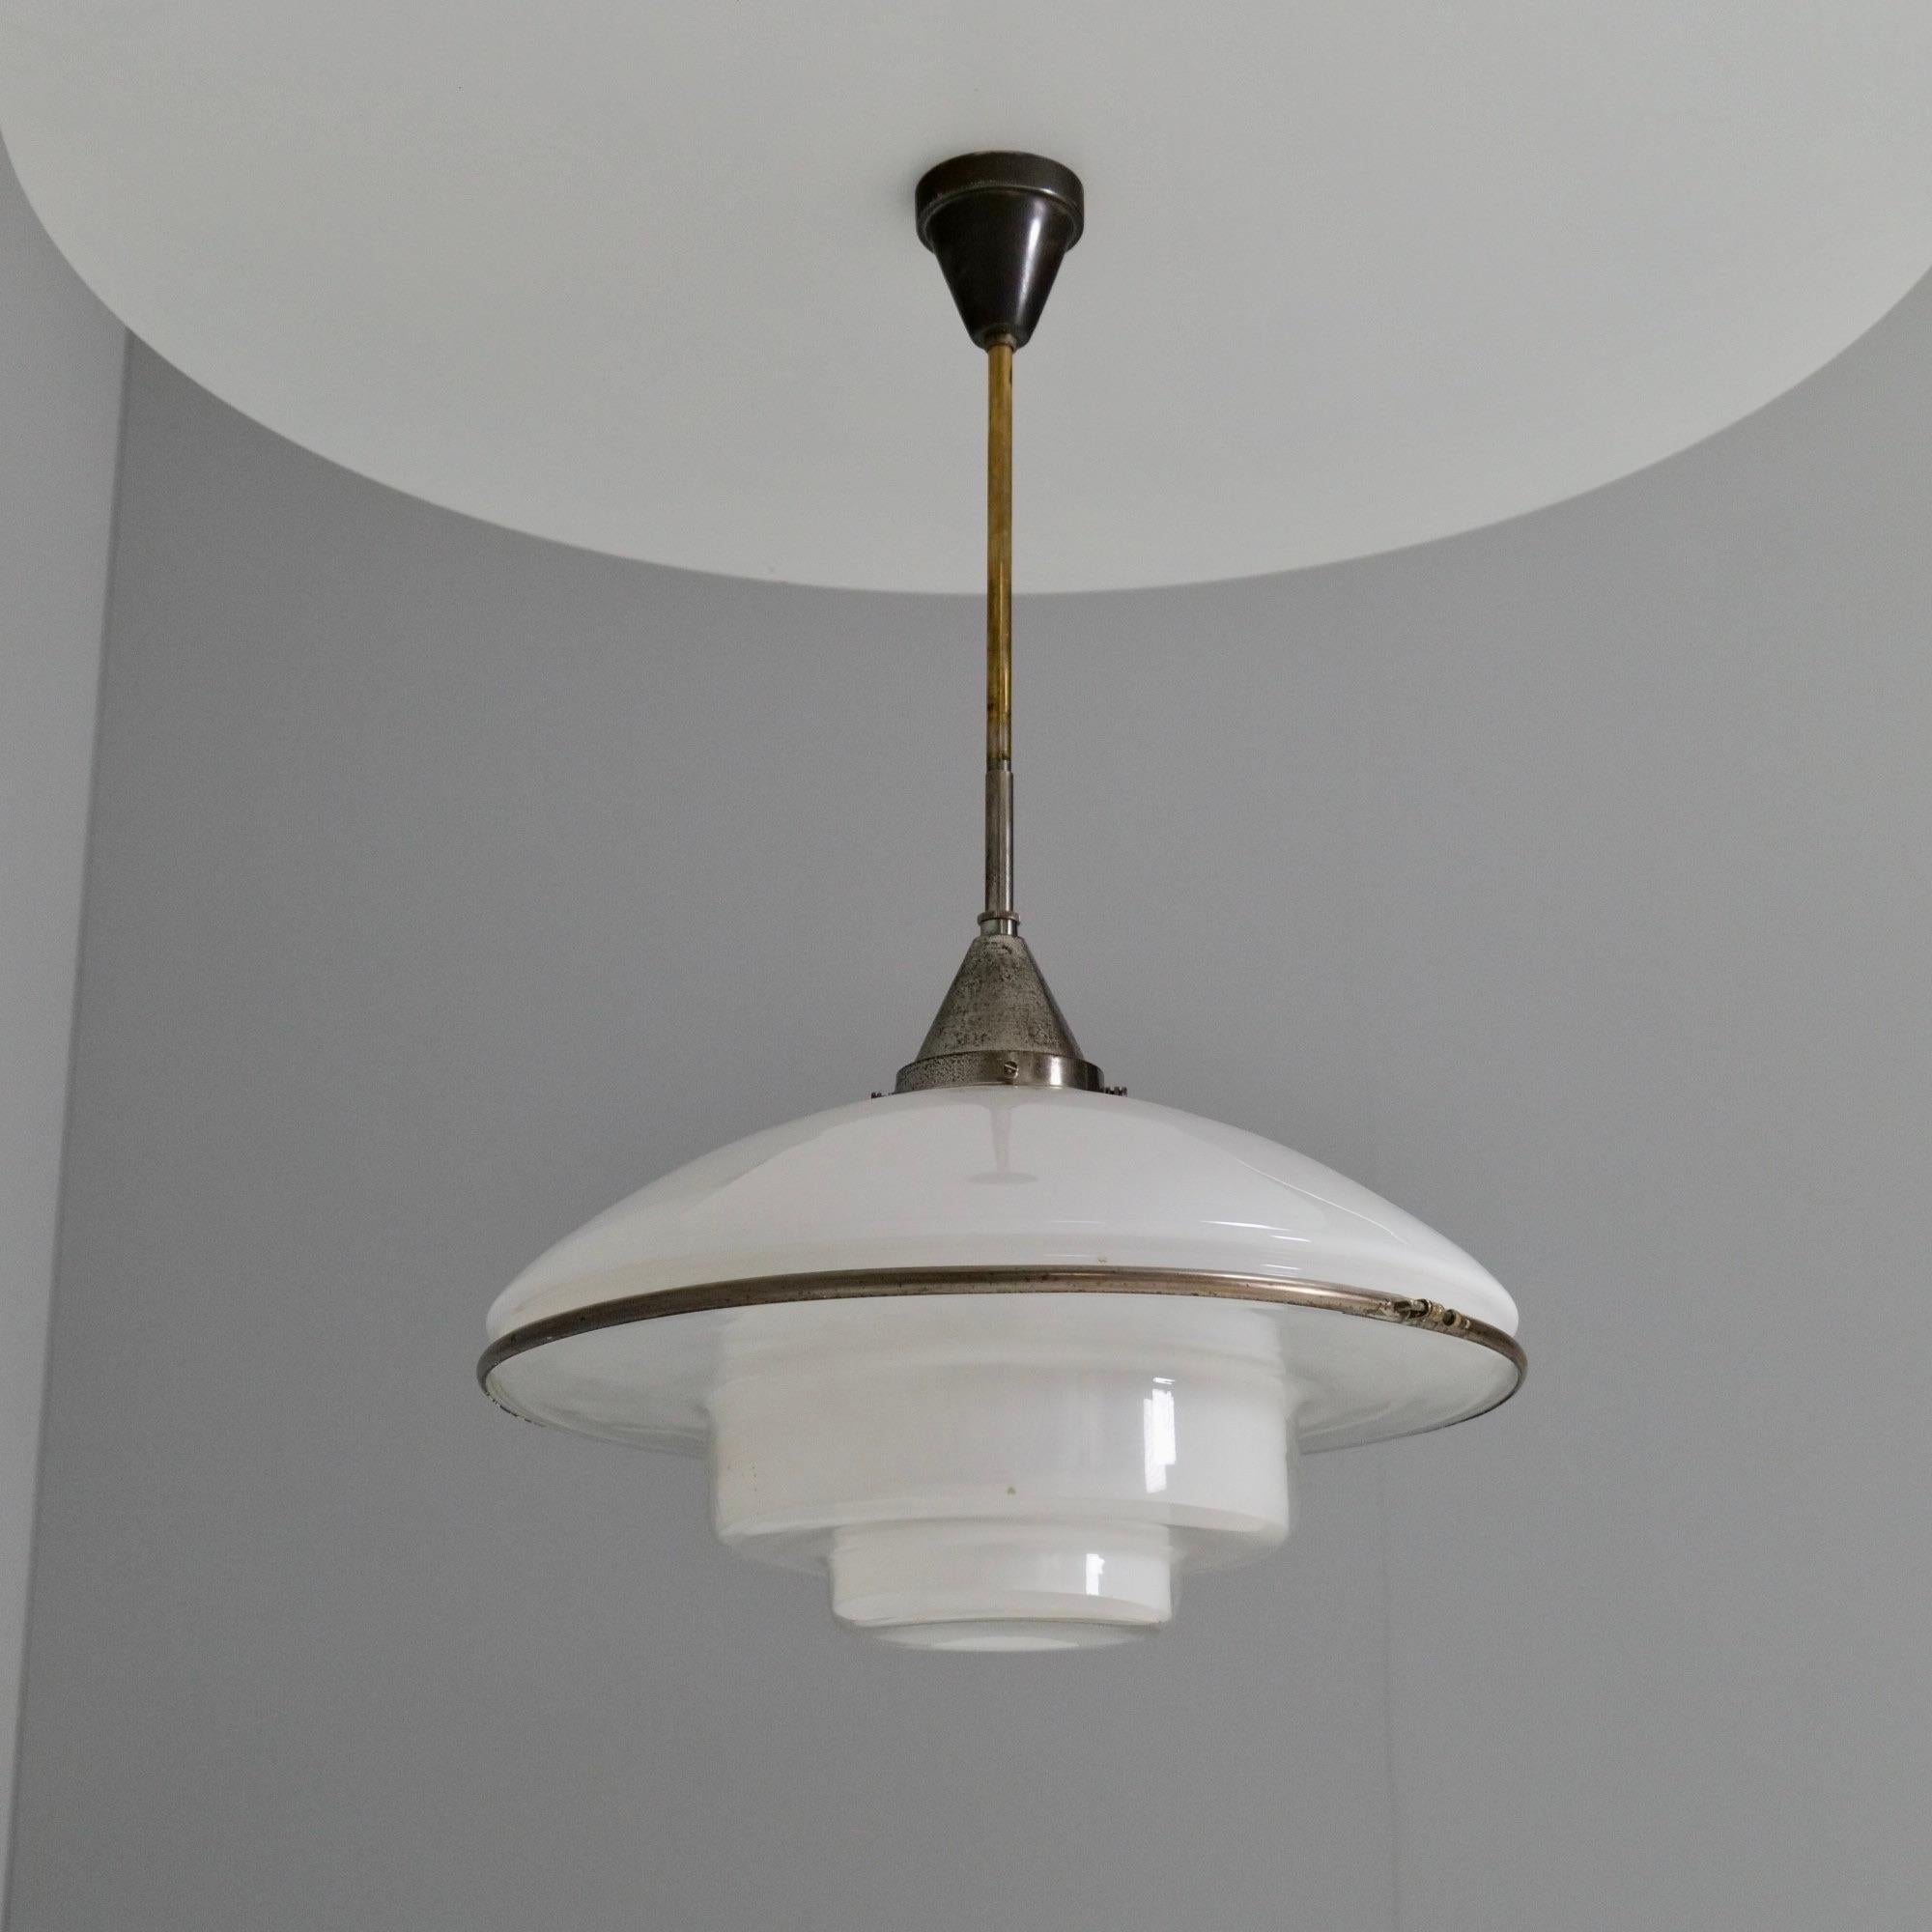 Seltene deutsche Art-Deco-Lampe aus den 1930er Jahren, entworfen von Otto Müller für Sistrah Leuchten. Die Entwürfe von Otto Müller waren ein neues Konzept für die Beleuchtung. Diese Leuchte besteht aus insgesamt sieben Elementen, von denen fünf